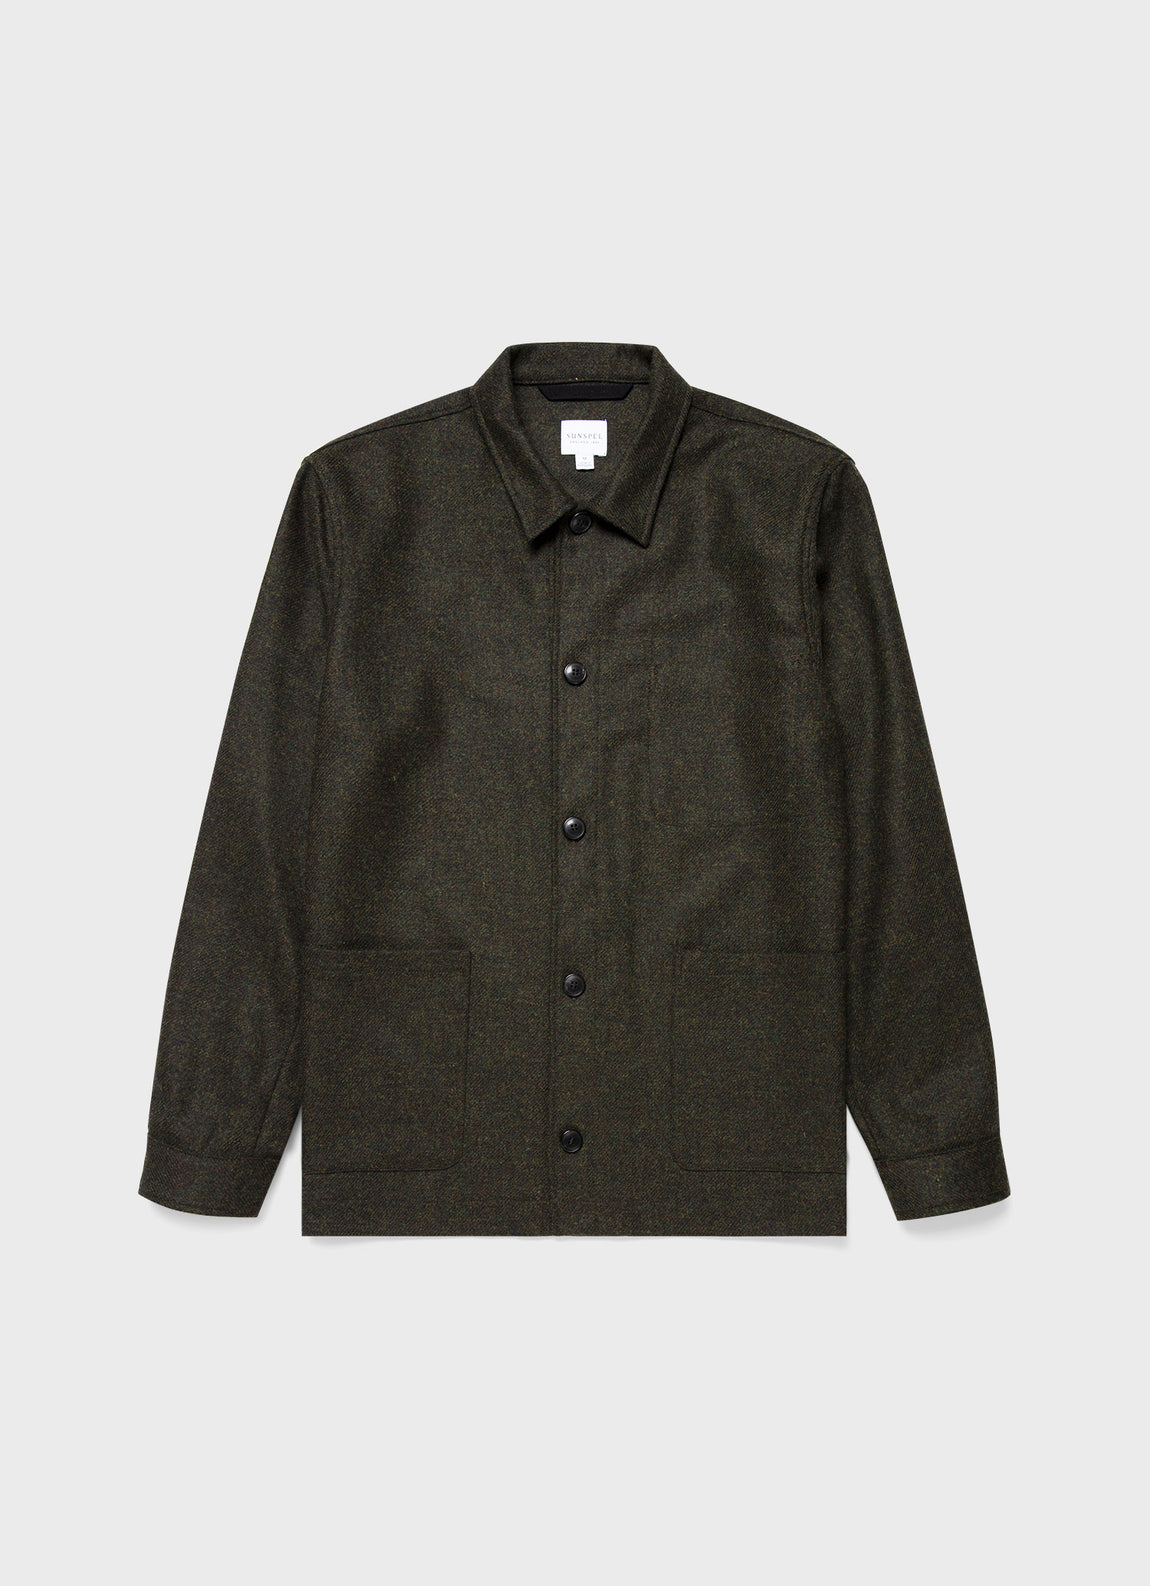 Men's Wool Twin Pocket Jacket in Dark Moss Melange